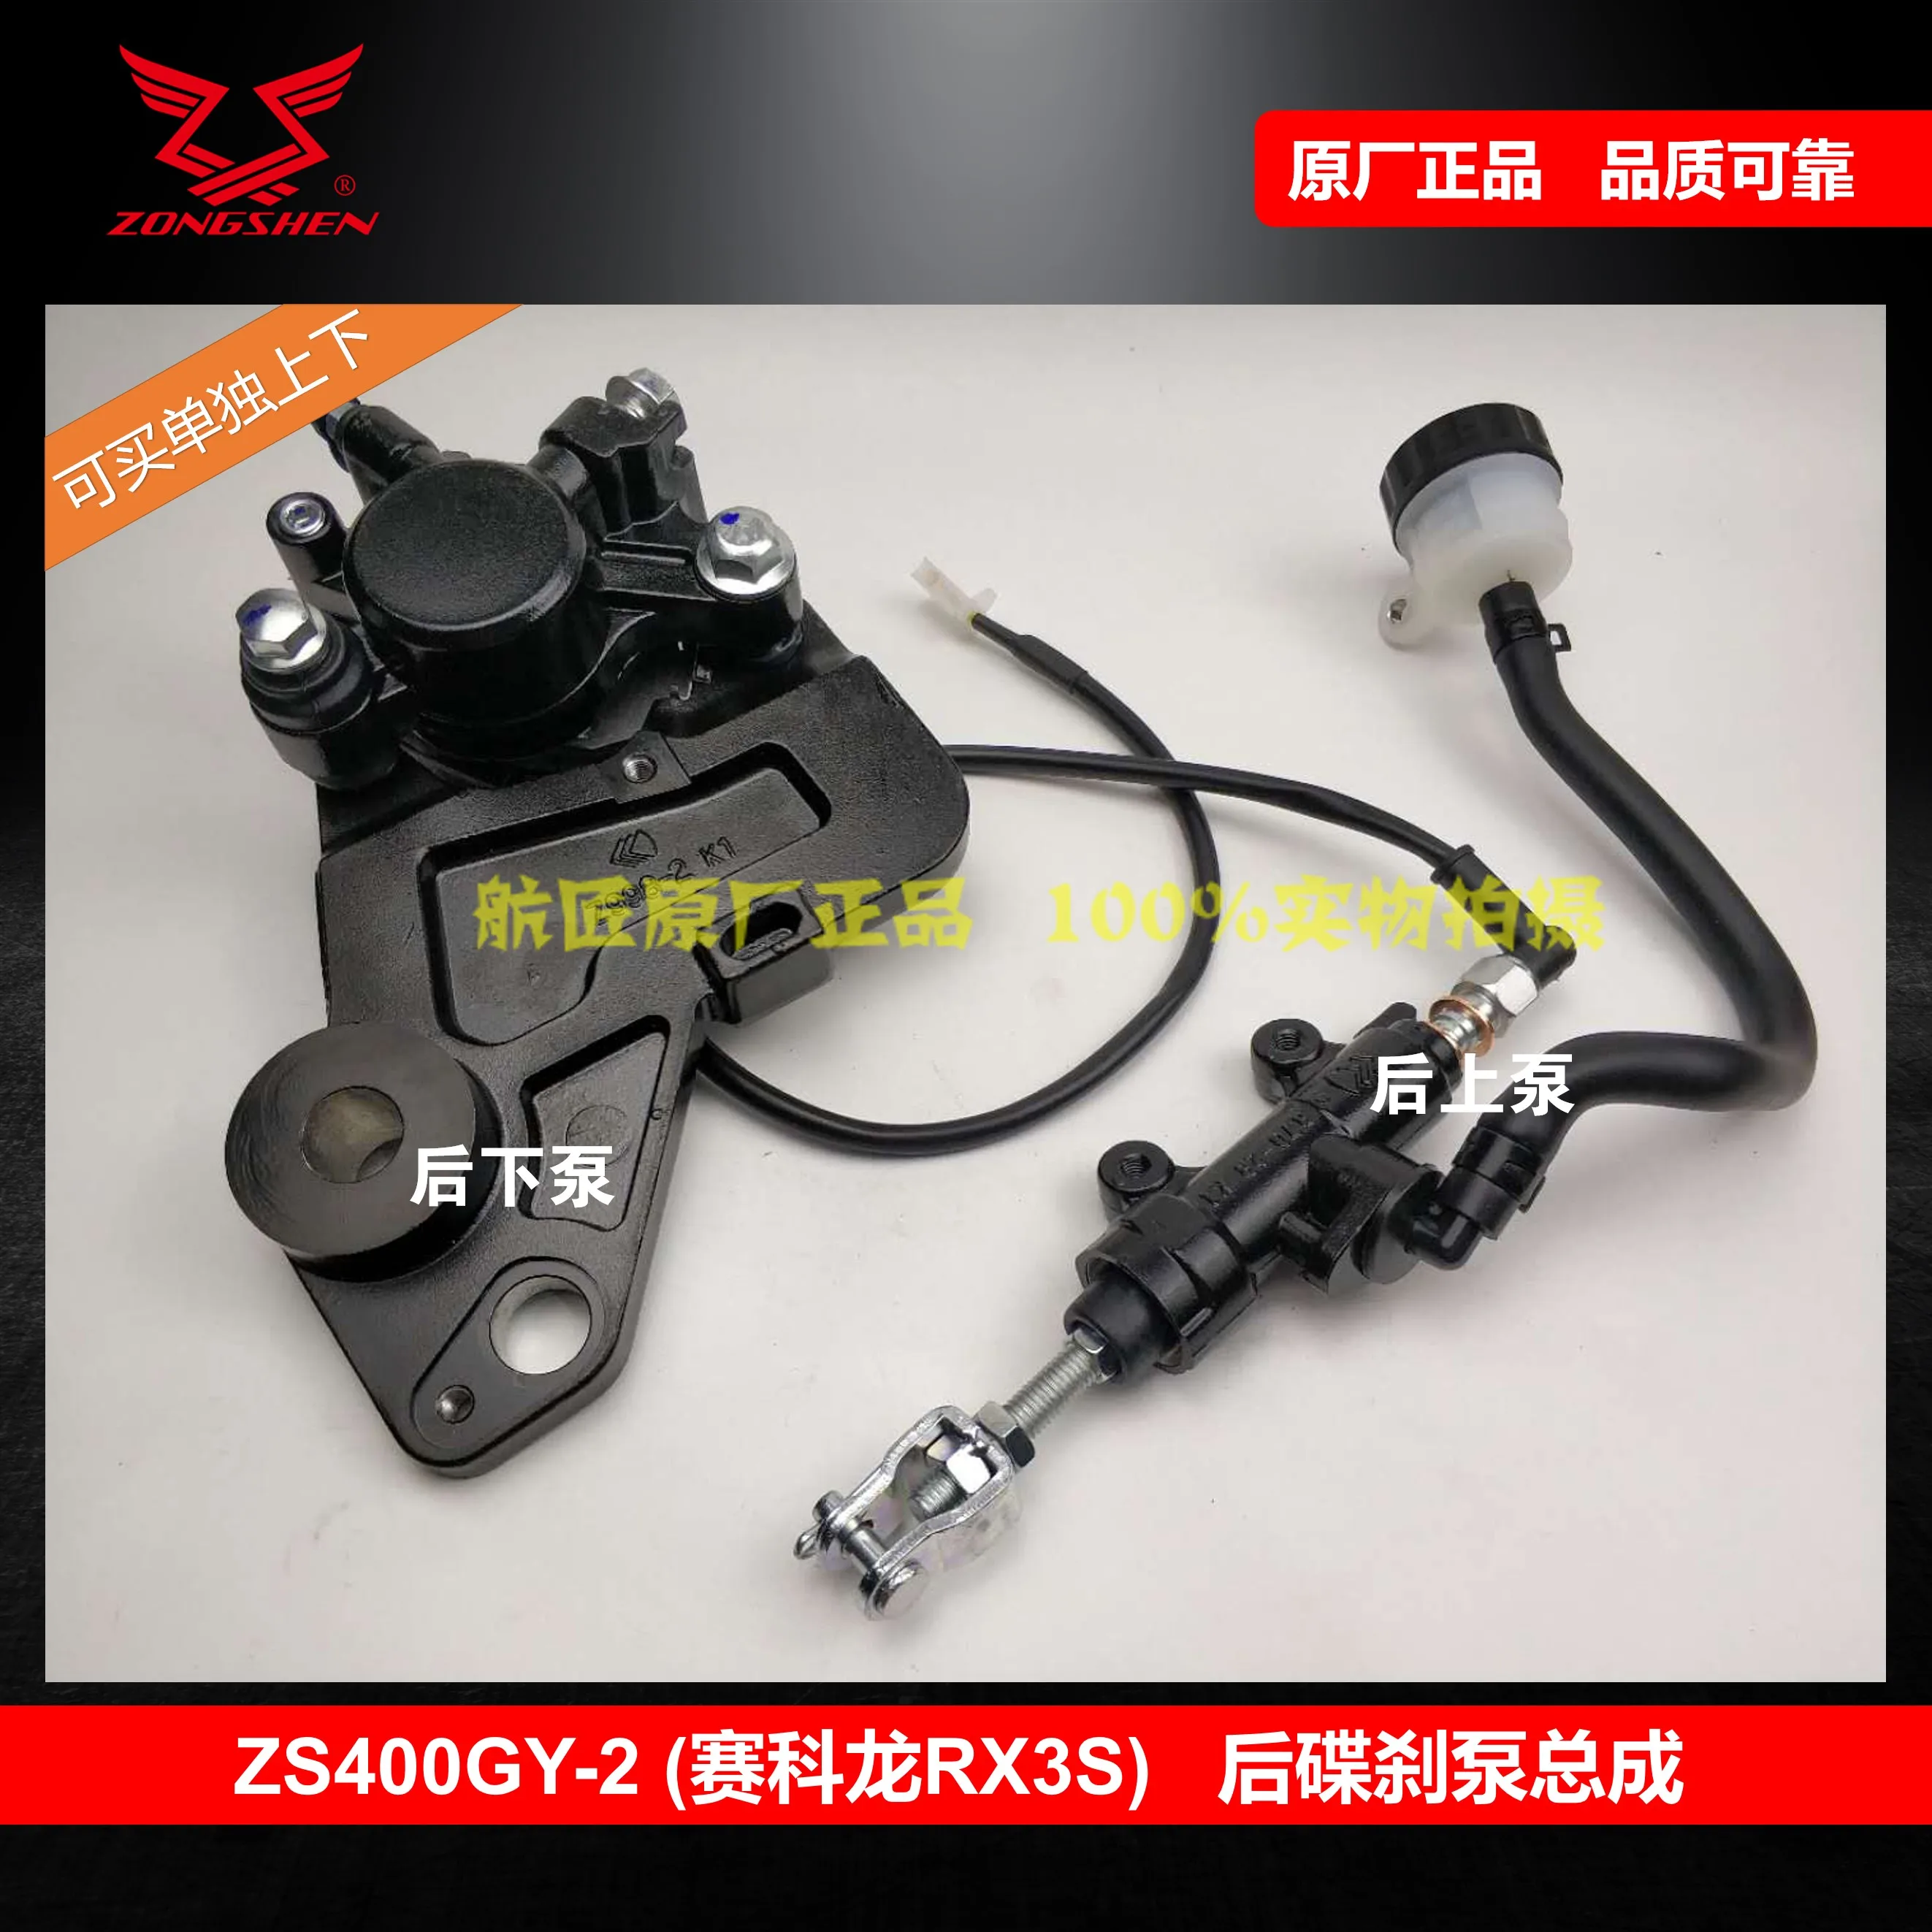 Tanie Tylny hamulec w motocyklu grip master pompa poziom dla zongshen RX3S ZS400GY-2 motor terenowy